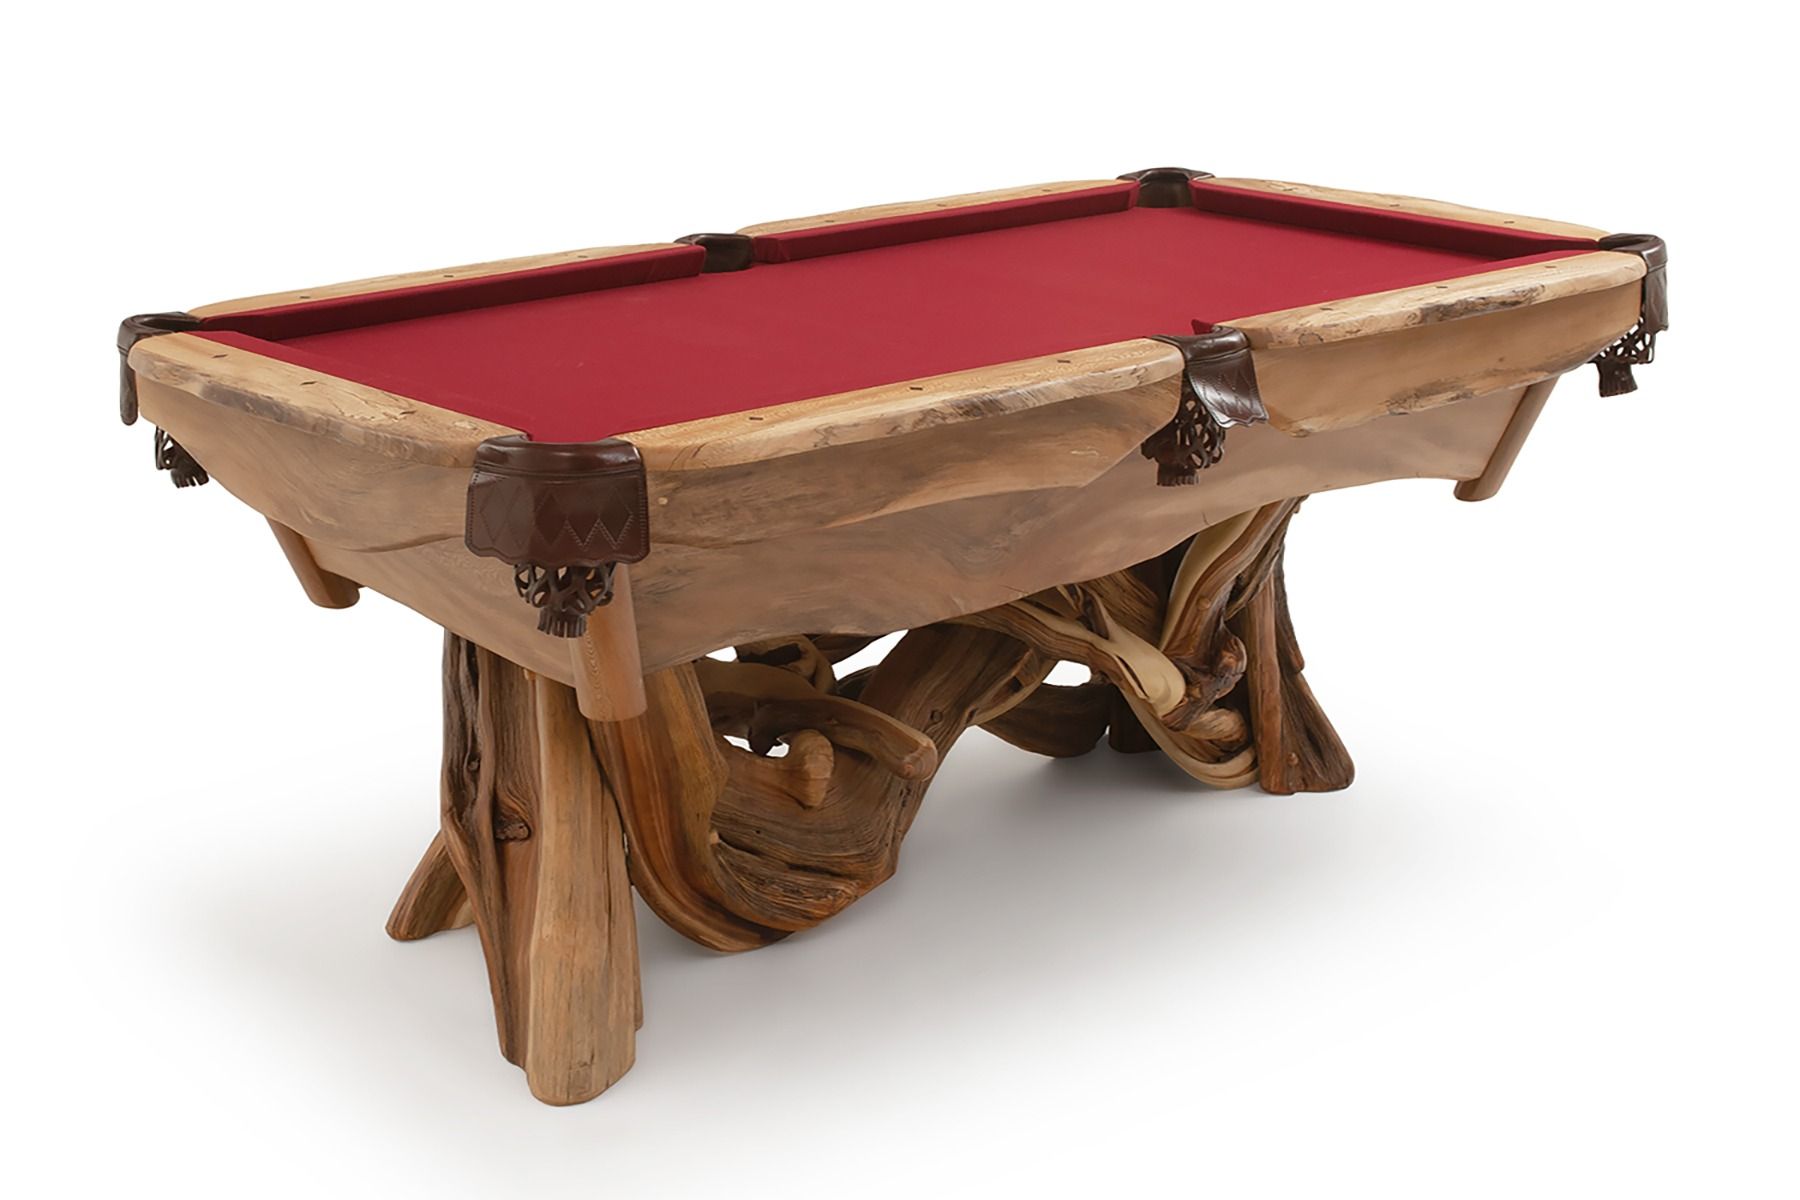 Rustic Juniper and Burl Wood Pool Table